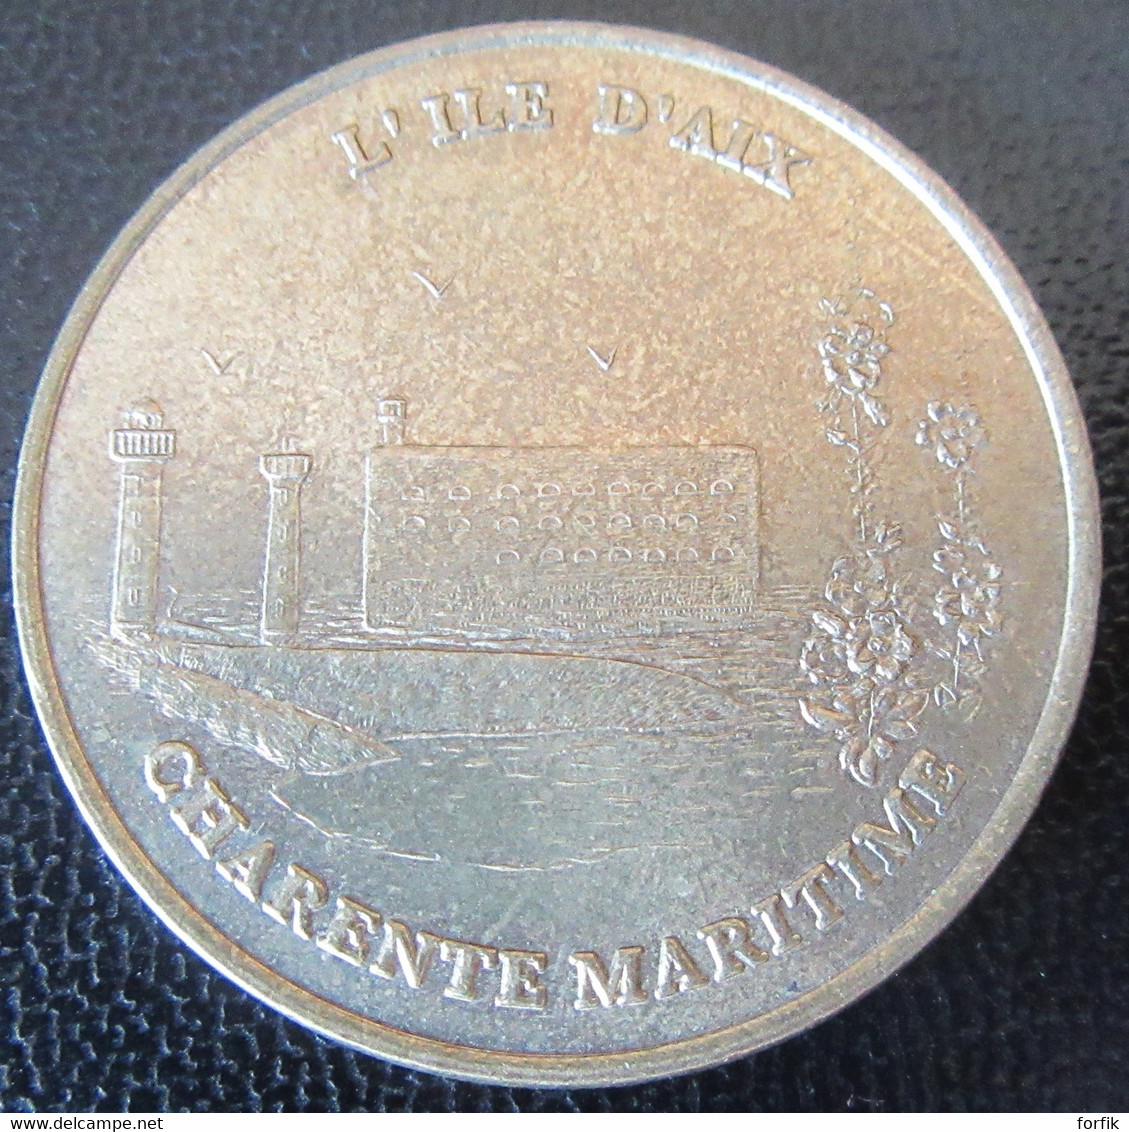 France - Médaille De La Monnaie De Paris - L'Ile D'Aix 2002 - TBE - 2002